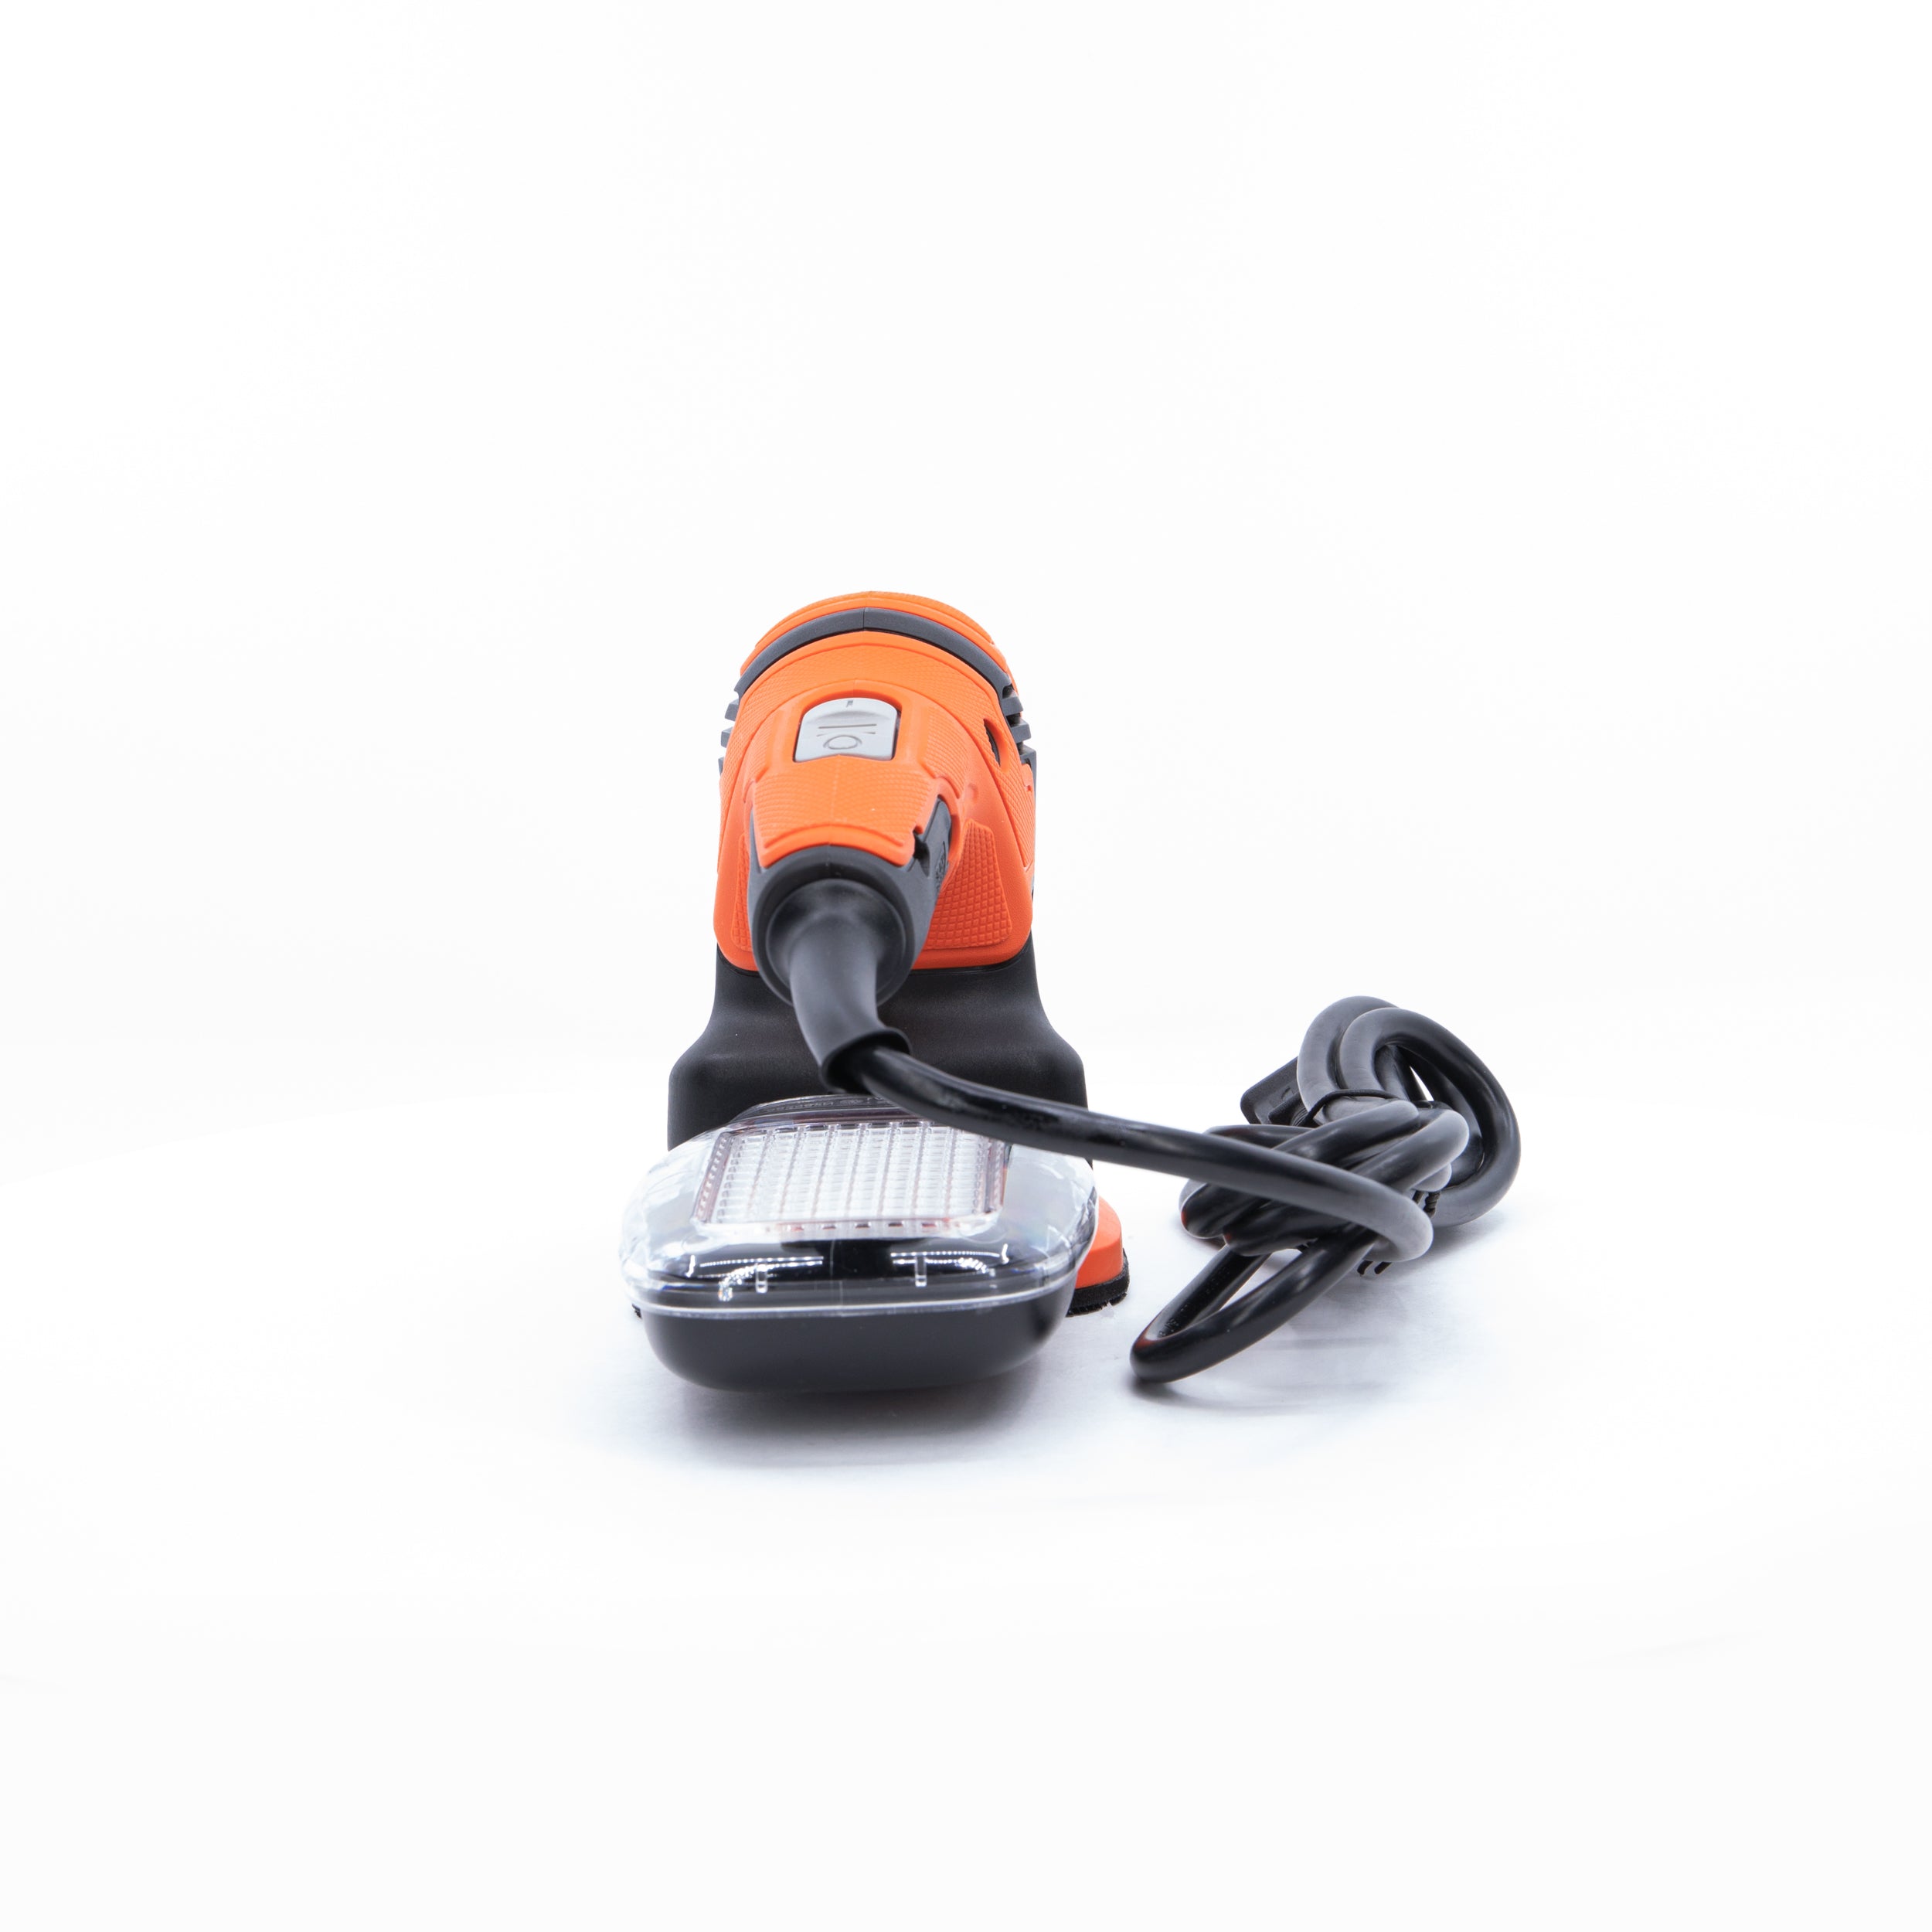 Black & Decker Mouse 1.2 Amp Electric Detail Sander (BDEMS200C)